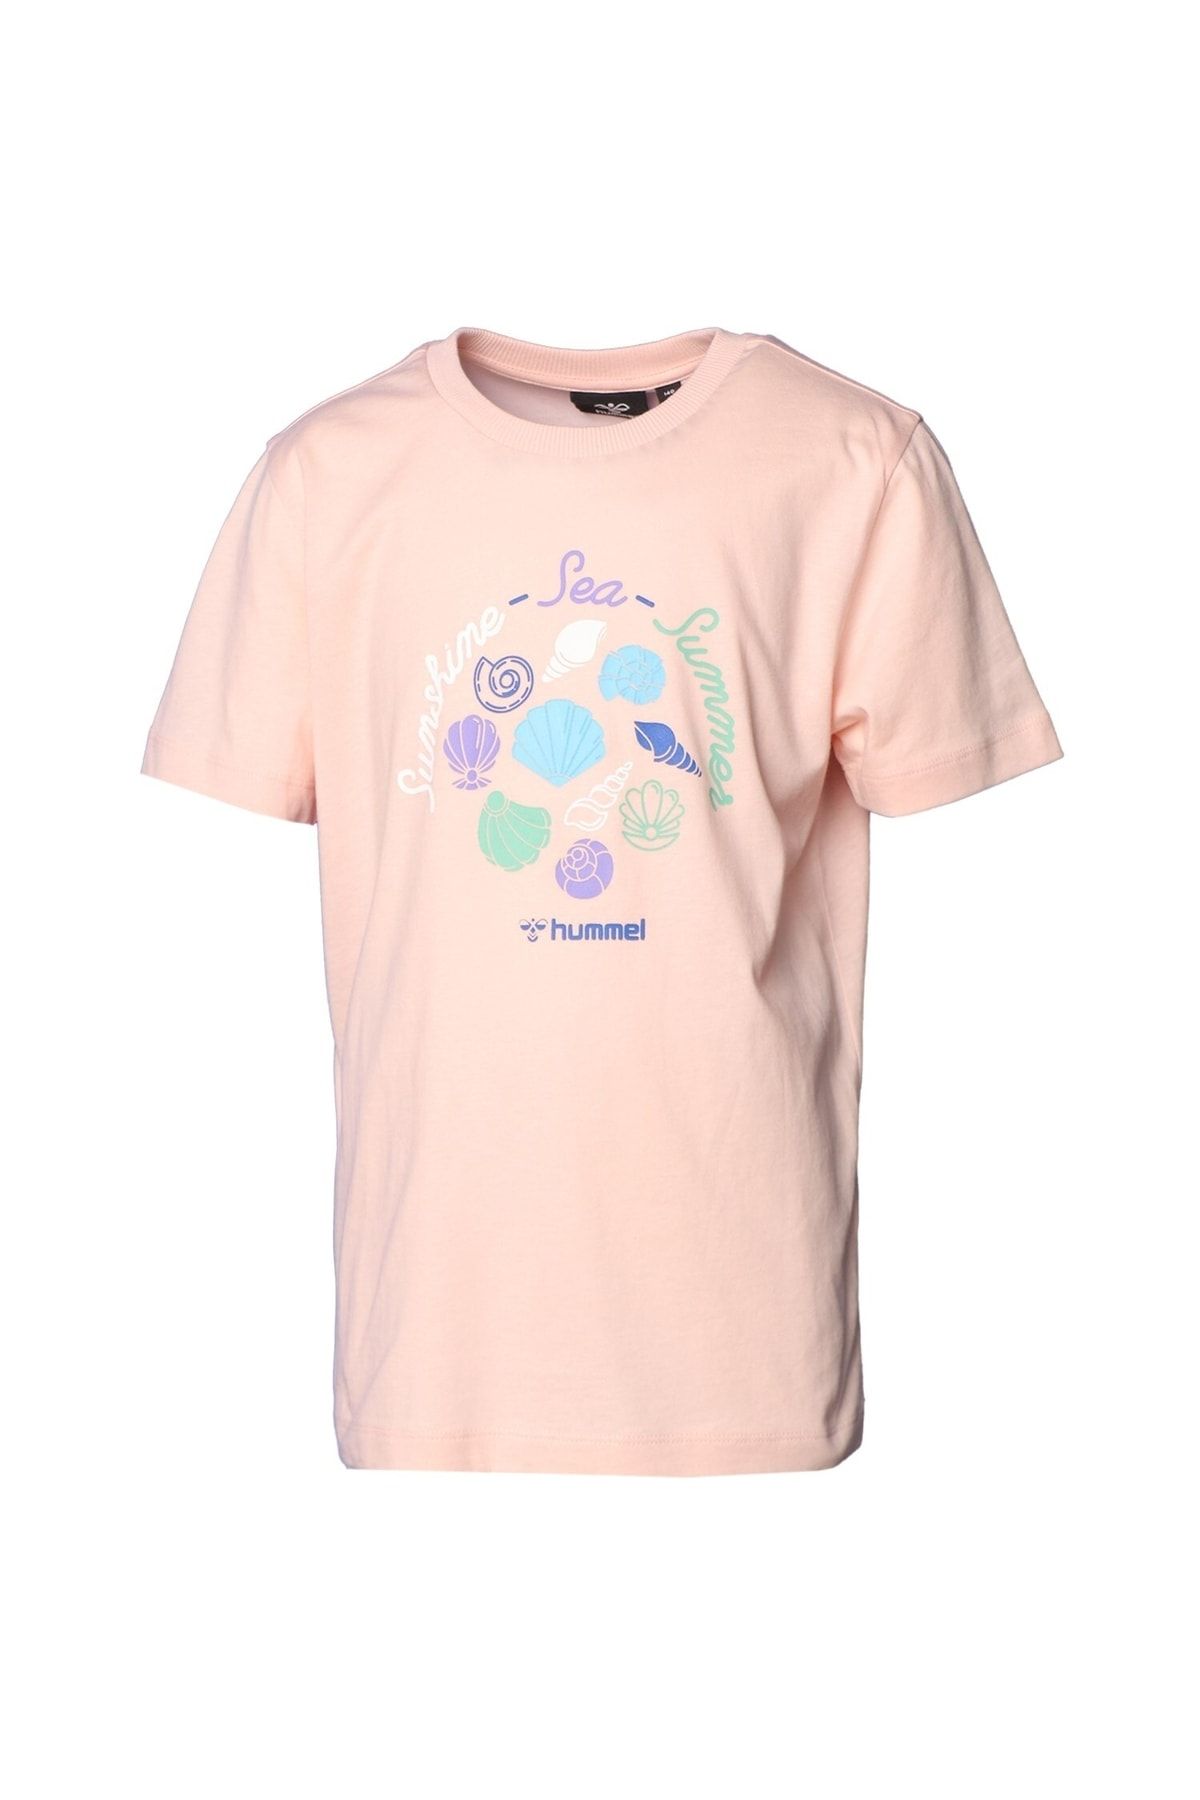 hummel Sakura Çocuk T-shirt